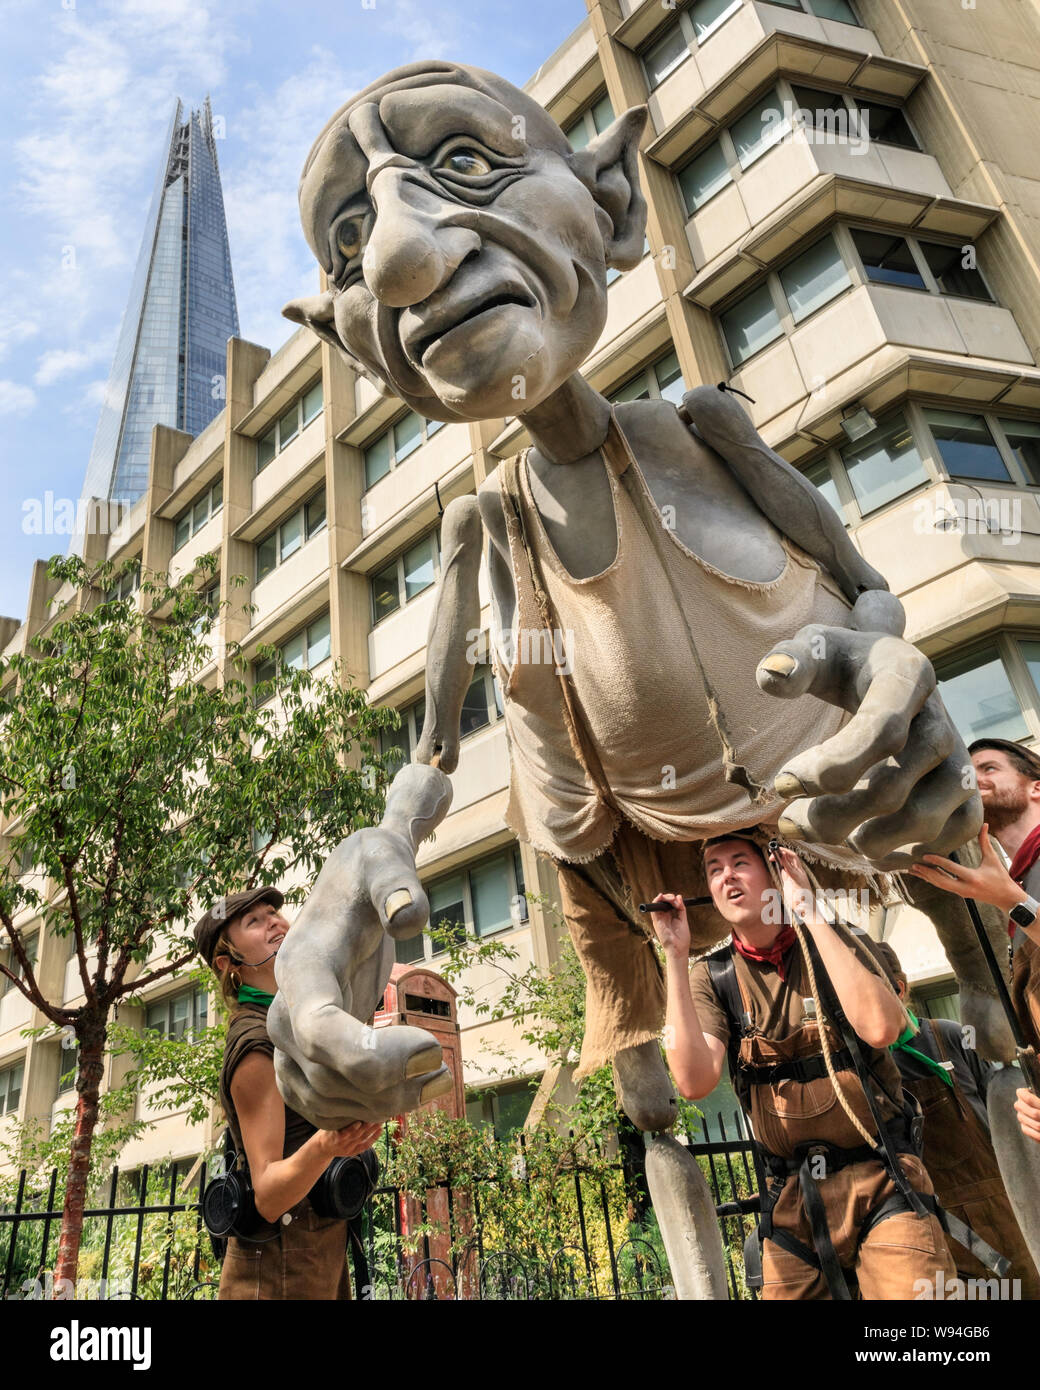 Gnomus, gardien de la terre, un doux géant géant vert avec des Marionnettes Marionnettes par 'courage' marionnettistes, les performances à l'extérieur à Southwark, Londres, UK Banque D'Images